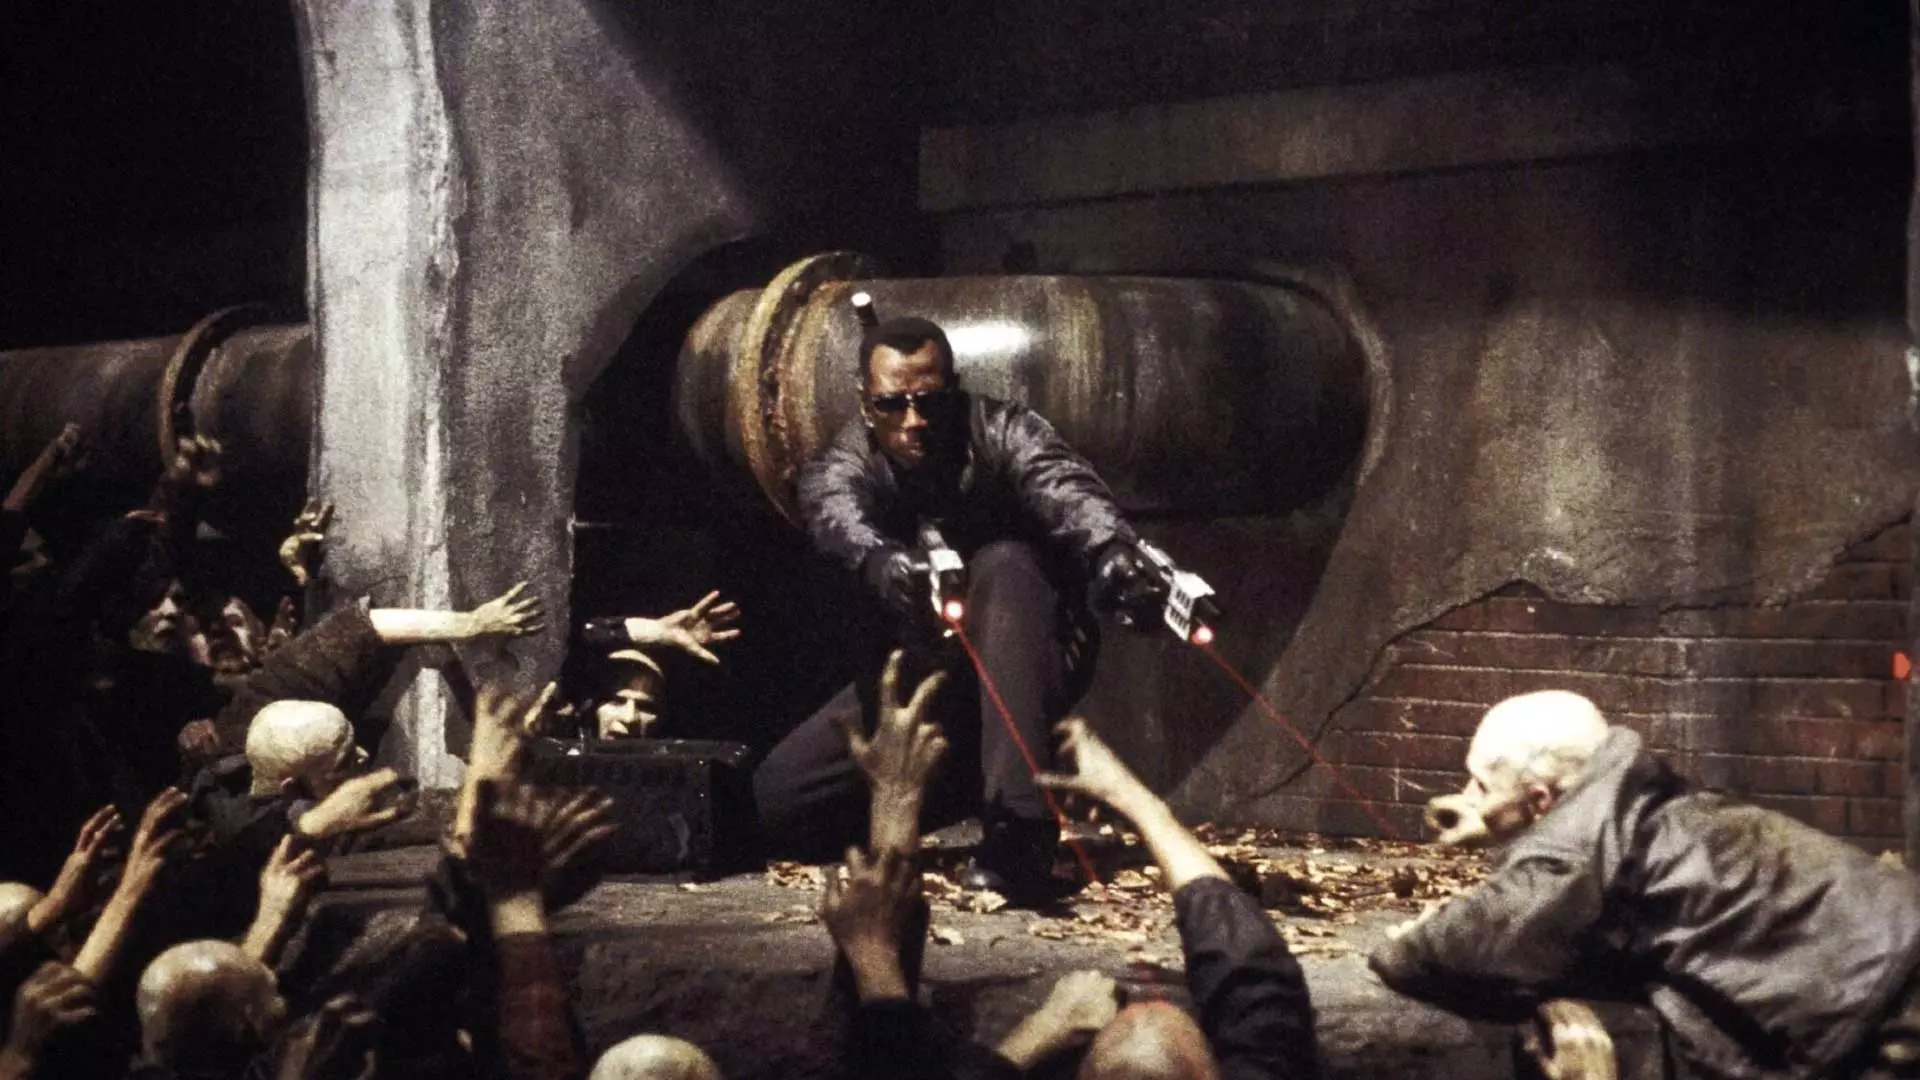 وسلی اسنایپس و نبرد با خون‌آشام‌های خطرناک در فیلم Blade II (فیلم Blade 2)، یکی از بهترین فیلم های ابرقهرمانی تاریخ سینما